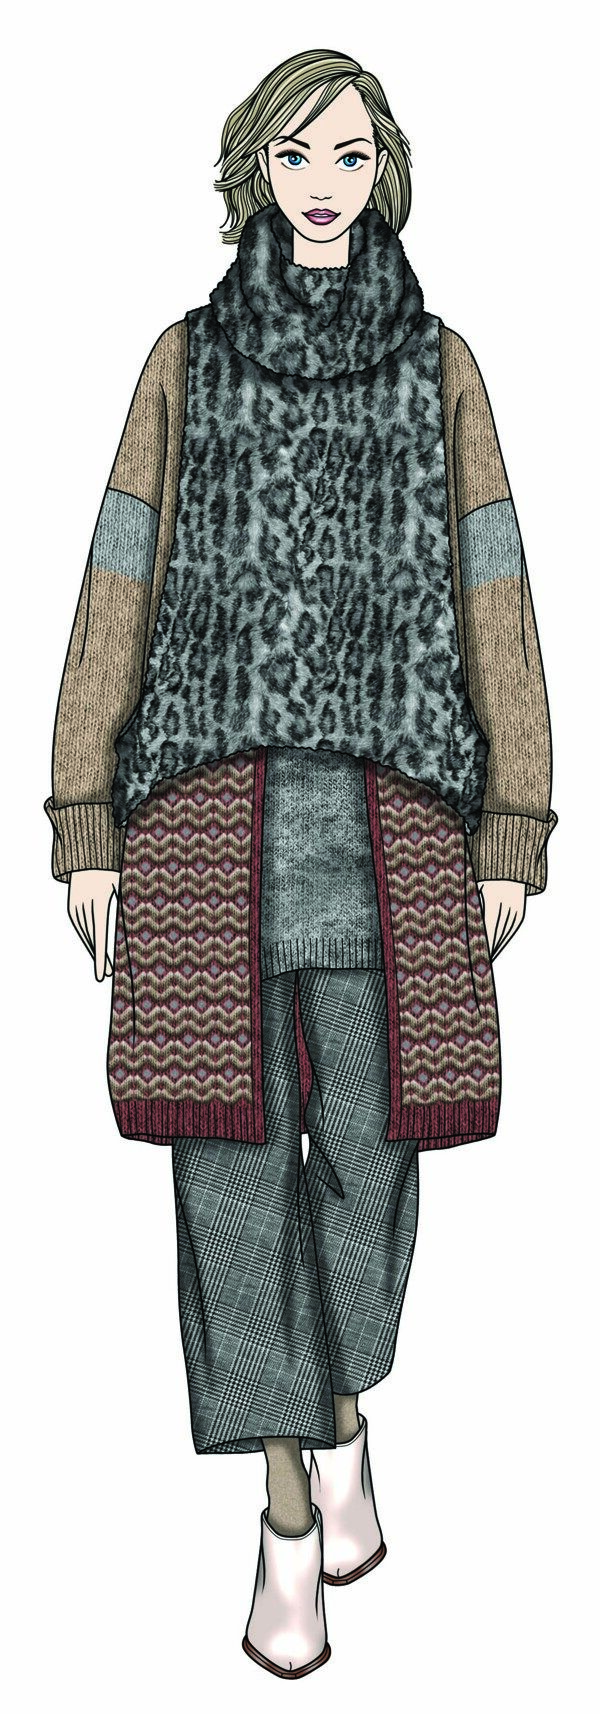 个性豹纹毛衣女装服装效果图